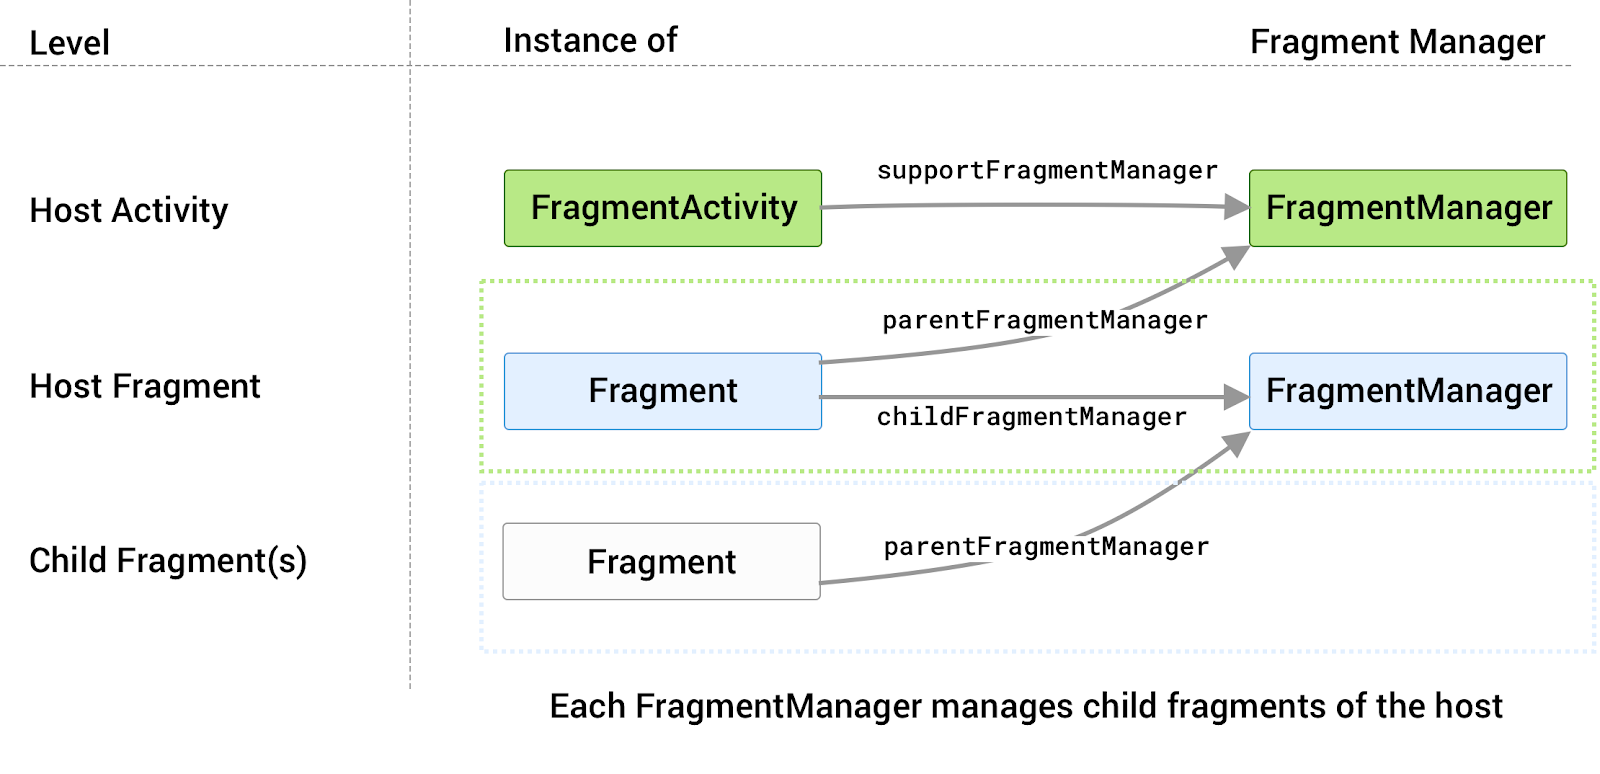 每個主機都有專屬的 FragmentManager，用於管理其子項片段